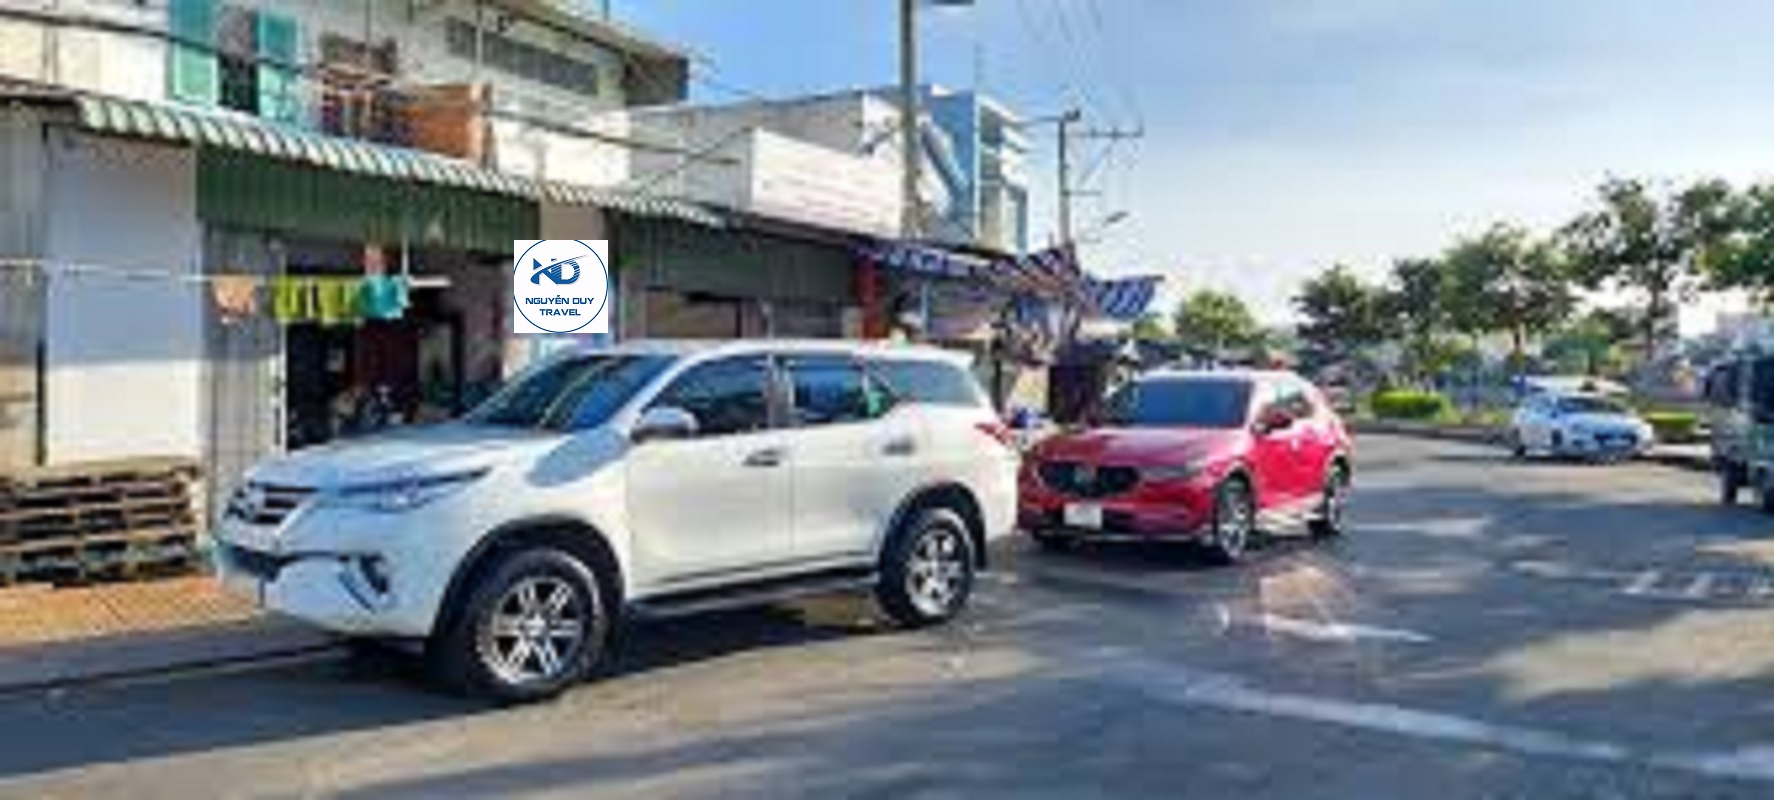 Dịch vụ cho thuê xe chuyên nghiệp 4 – 45 chỗ tại Phú Yên hiệu quả nhất